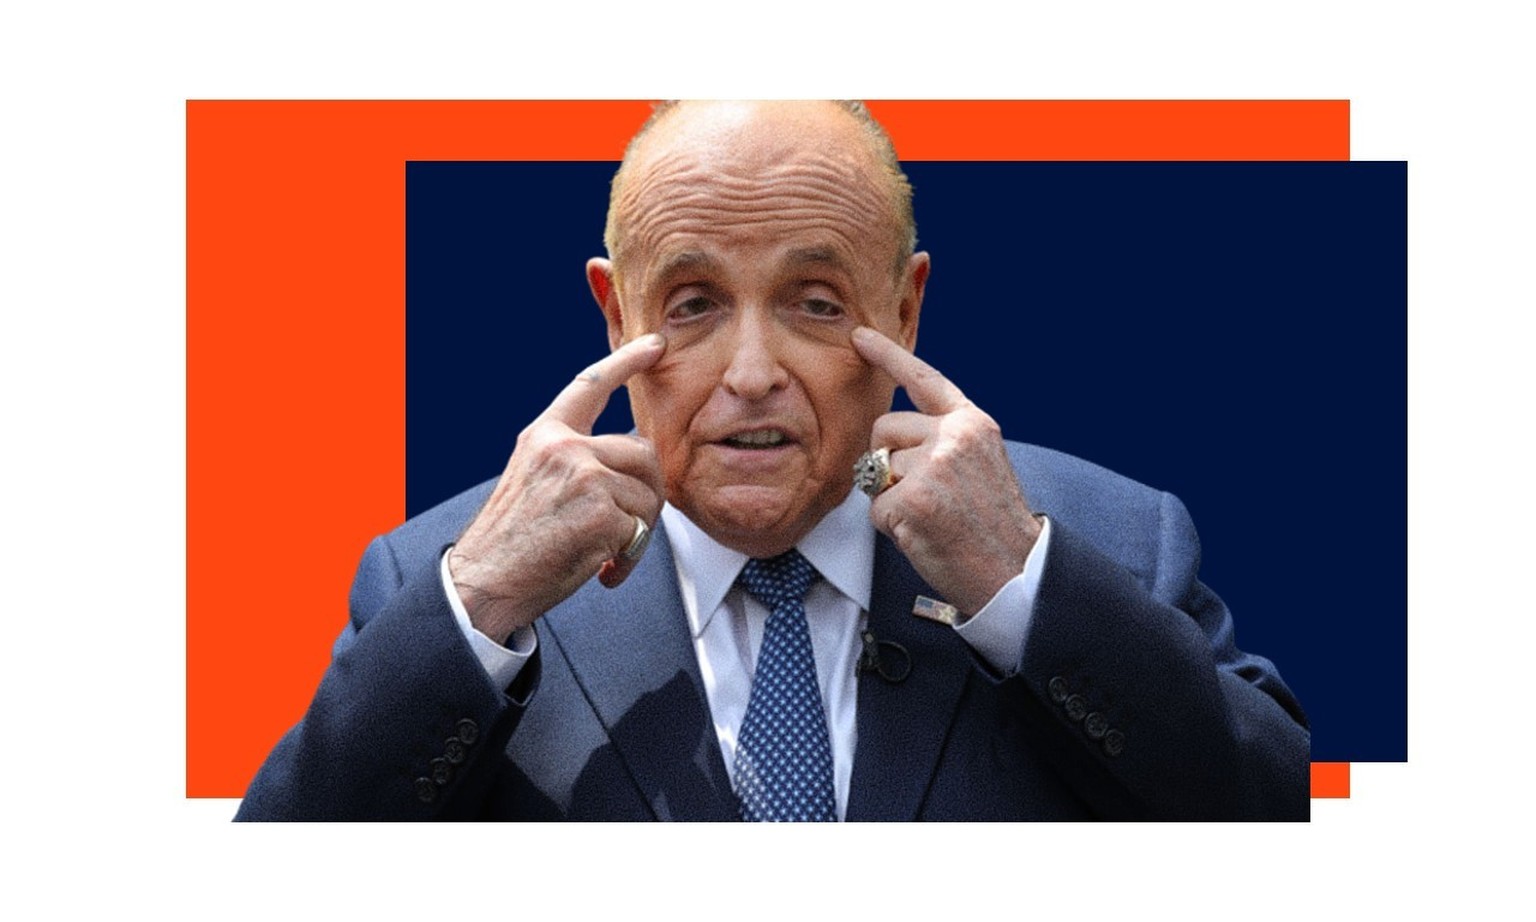 En moins d'une décennie, Rudy Giuliani est passé de l'ex-maire et procureur respecté au «clown» de service.